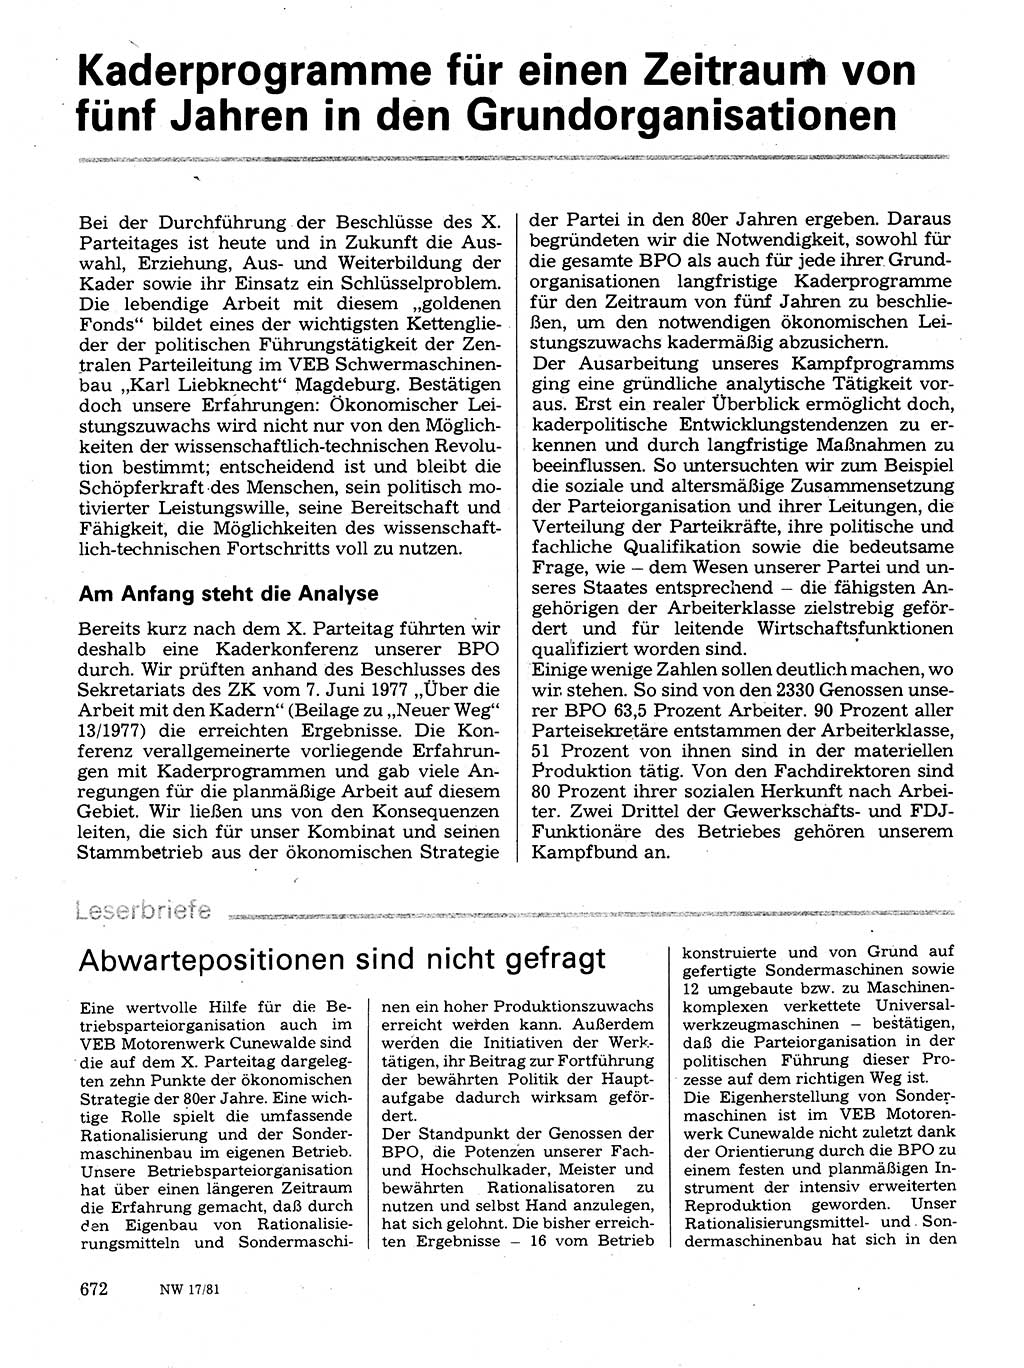 Neuer Weg (NW), Organ des Zentralkomitees (ZK) der SED (Sozialistische Einheitspartei Deutschlands) für Fragen des Parteilebens, 36. Jahrgang [Deutsche Demokratische Republik (DDR)] 1981, Seite 672 (NW ZK SED DDR 1981, S. 672)